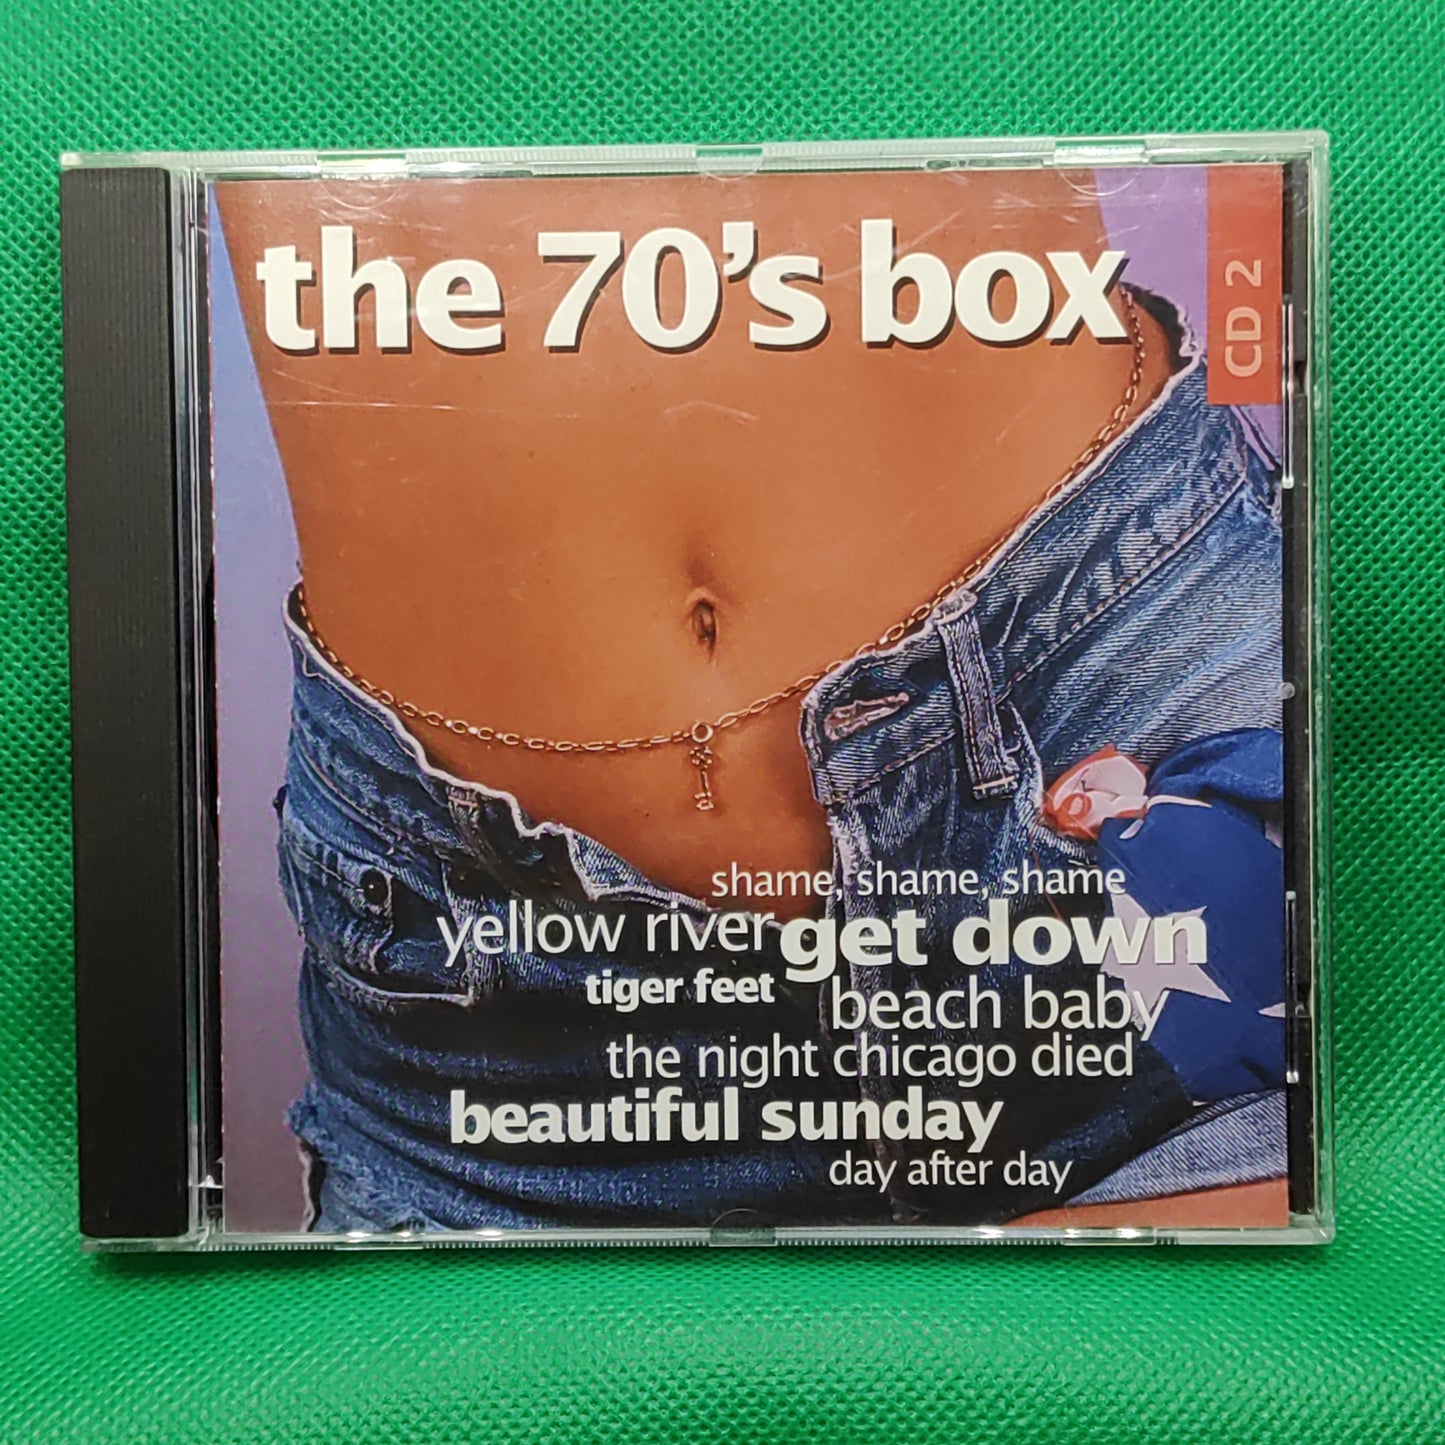 The 70's box